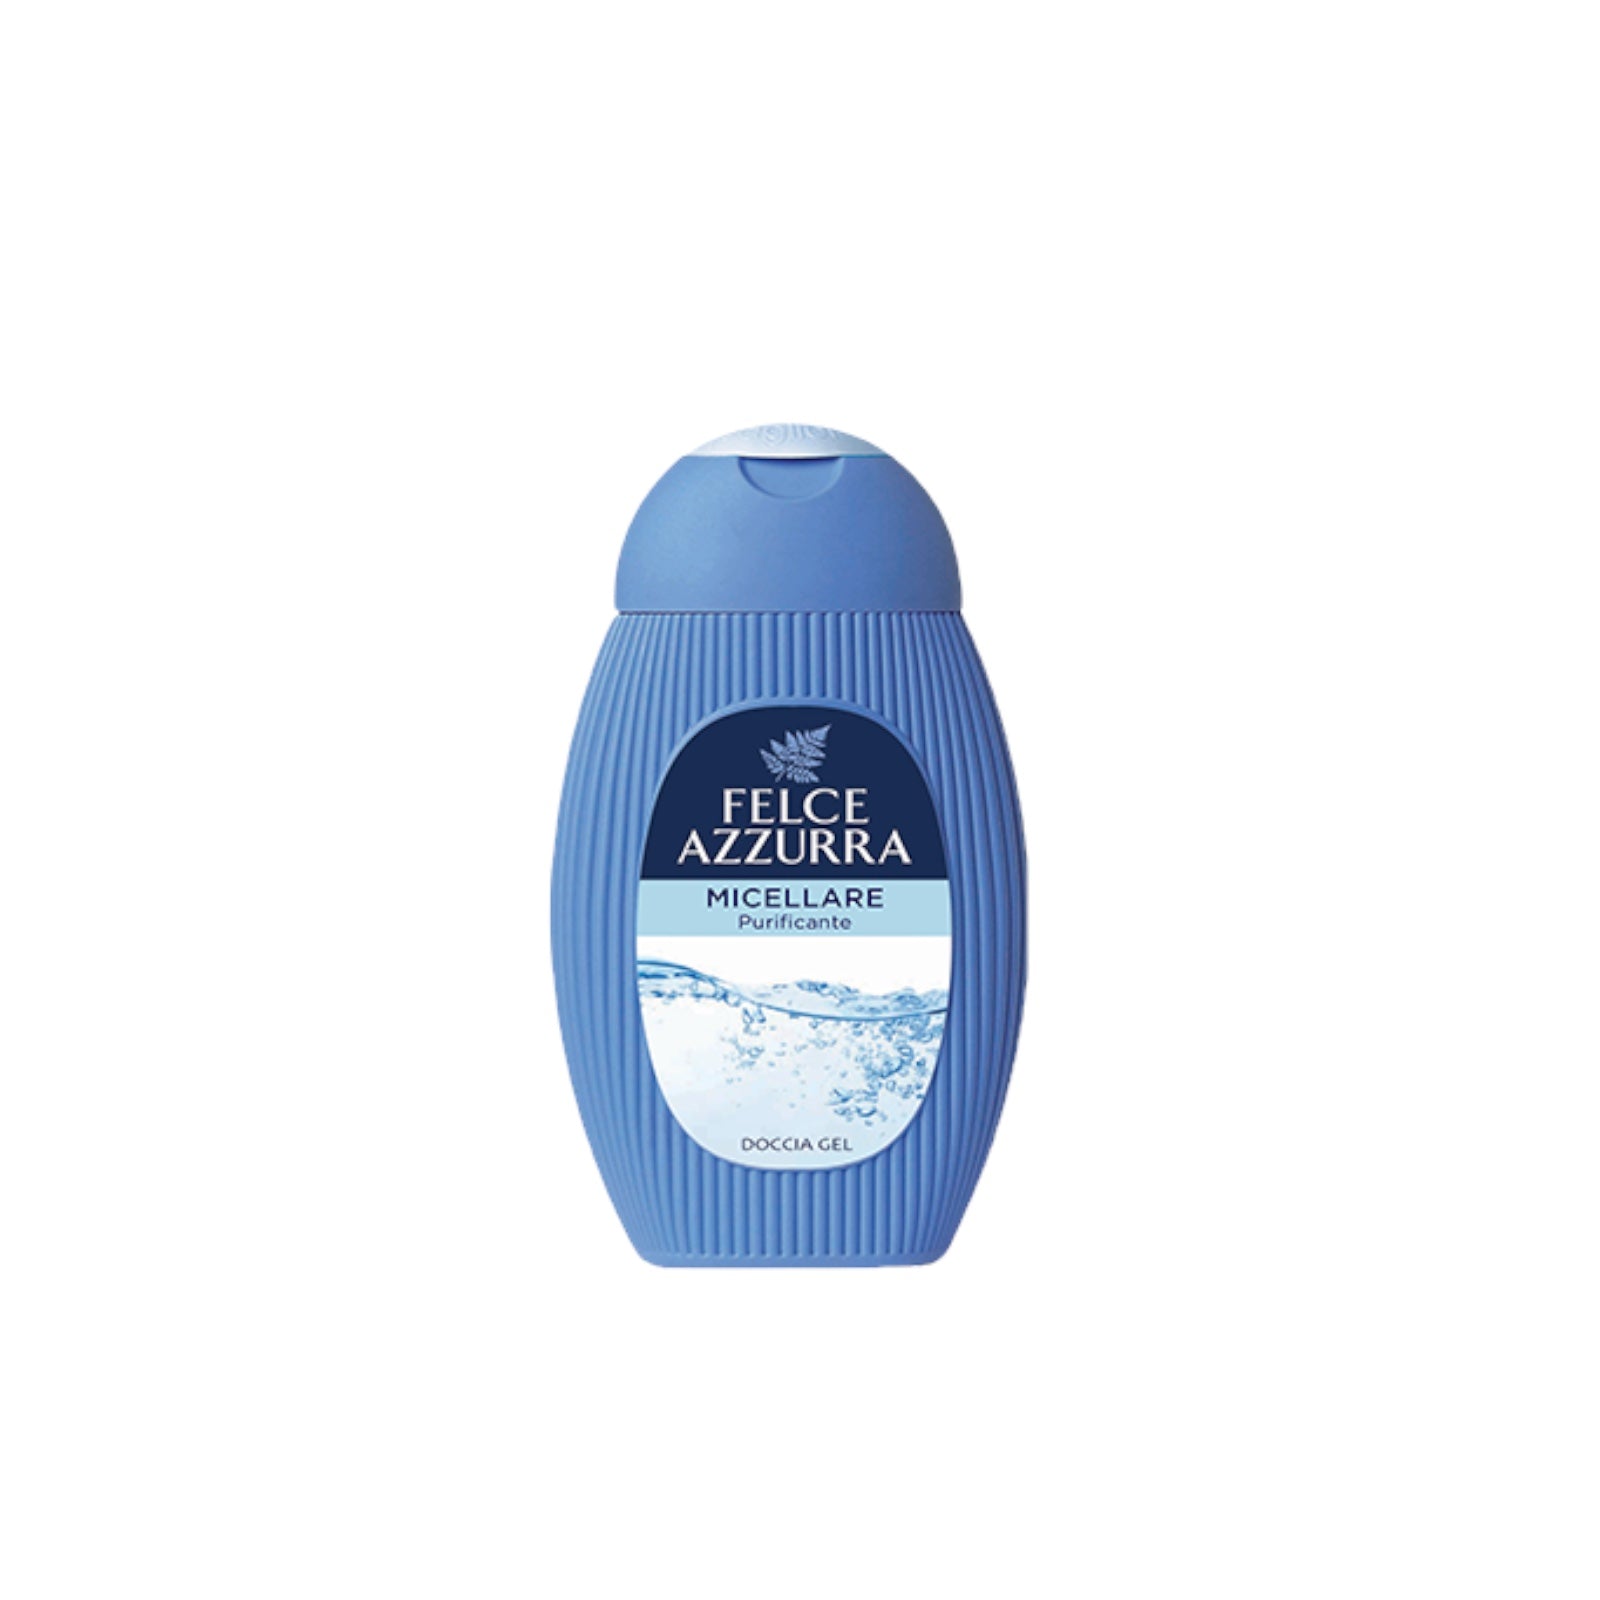 Cera di CupraRosa per Pelli Secche Cream for Dry Skin, Anti-age Formula -  2.5 Fluid Ounces (75ml) Tube [ Italian Import ]